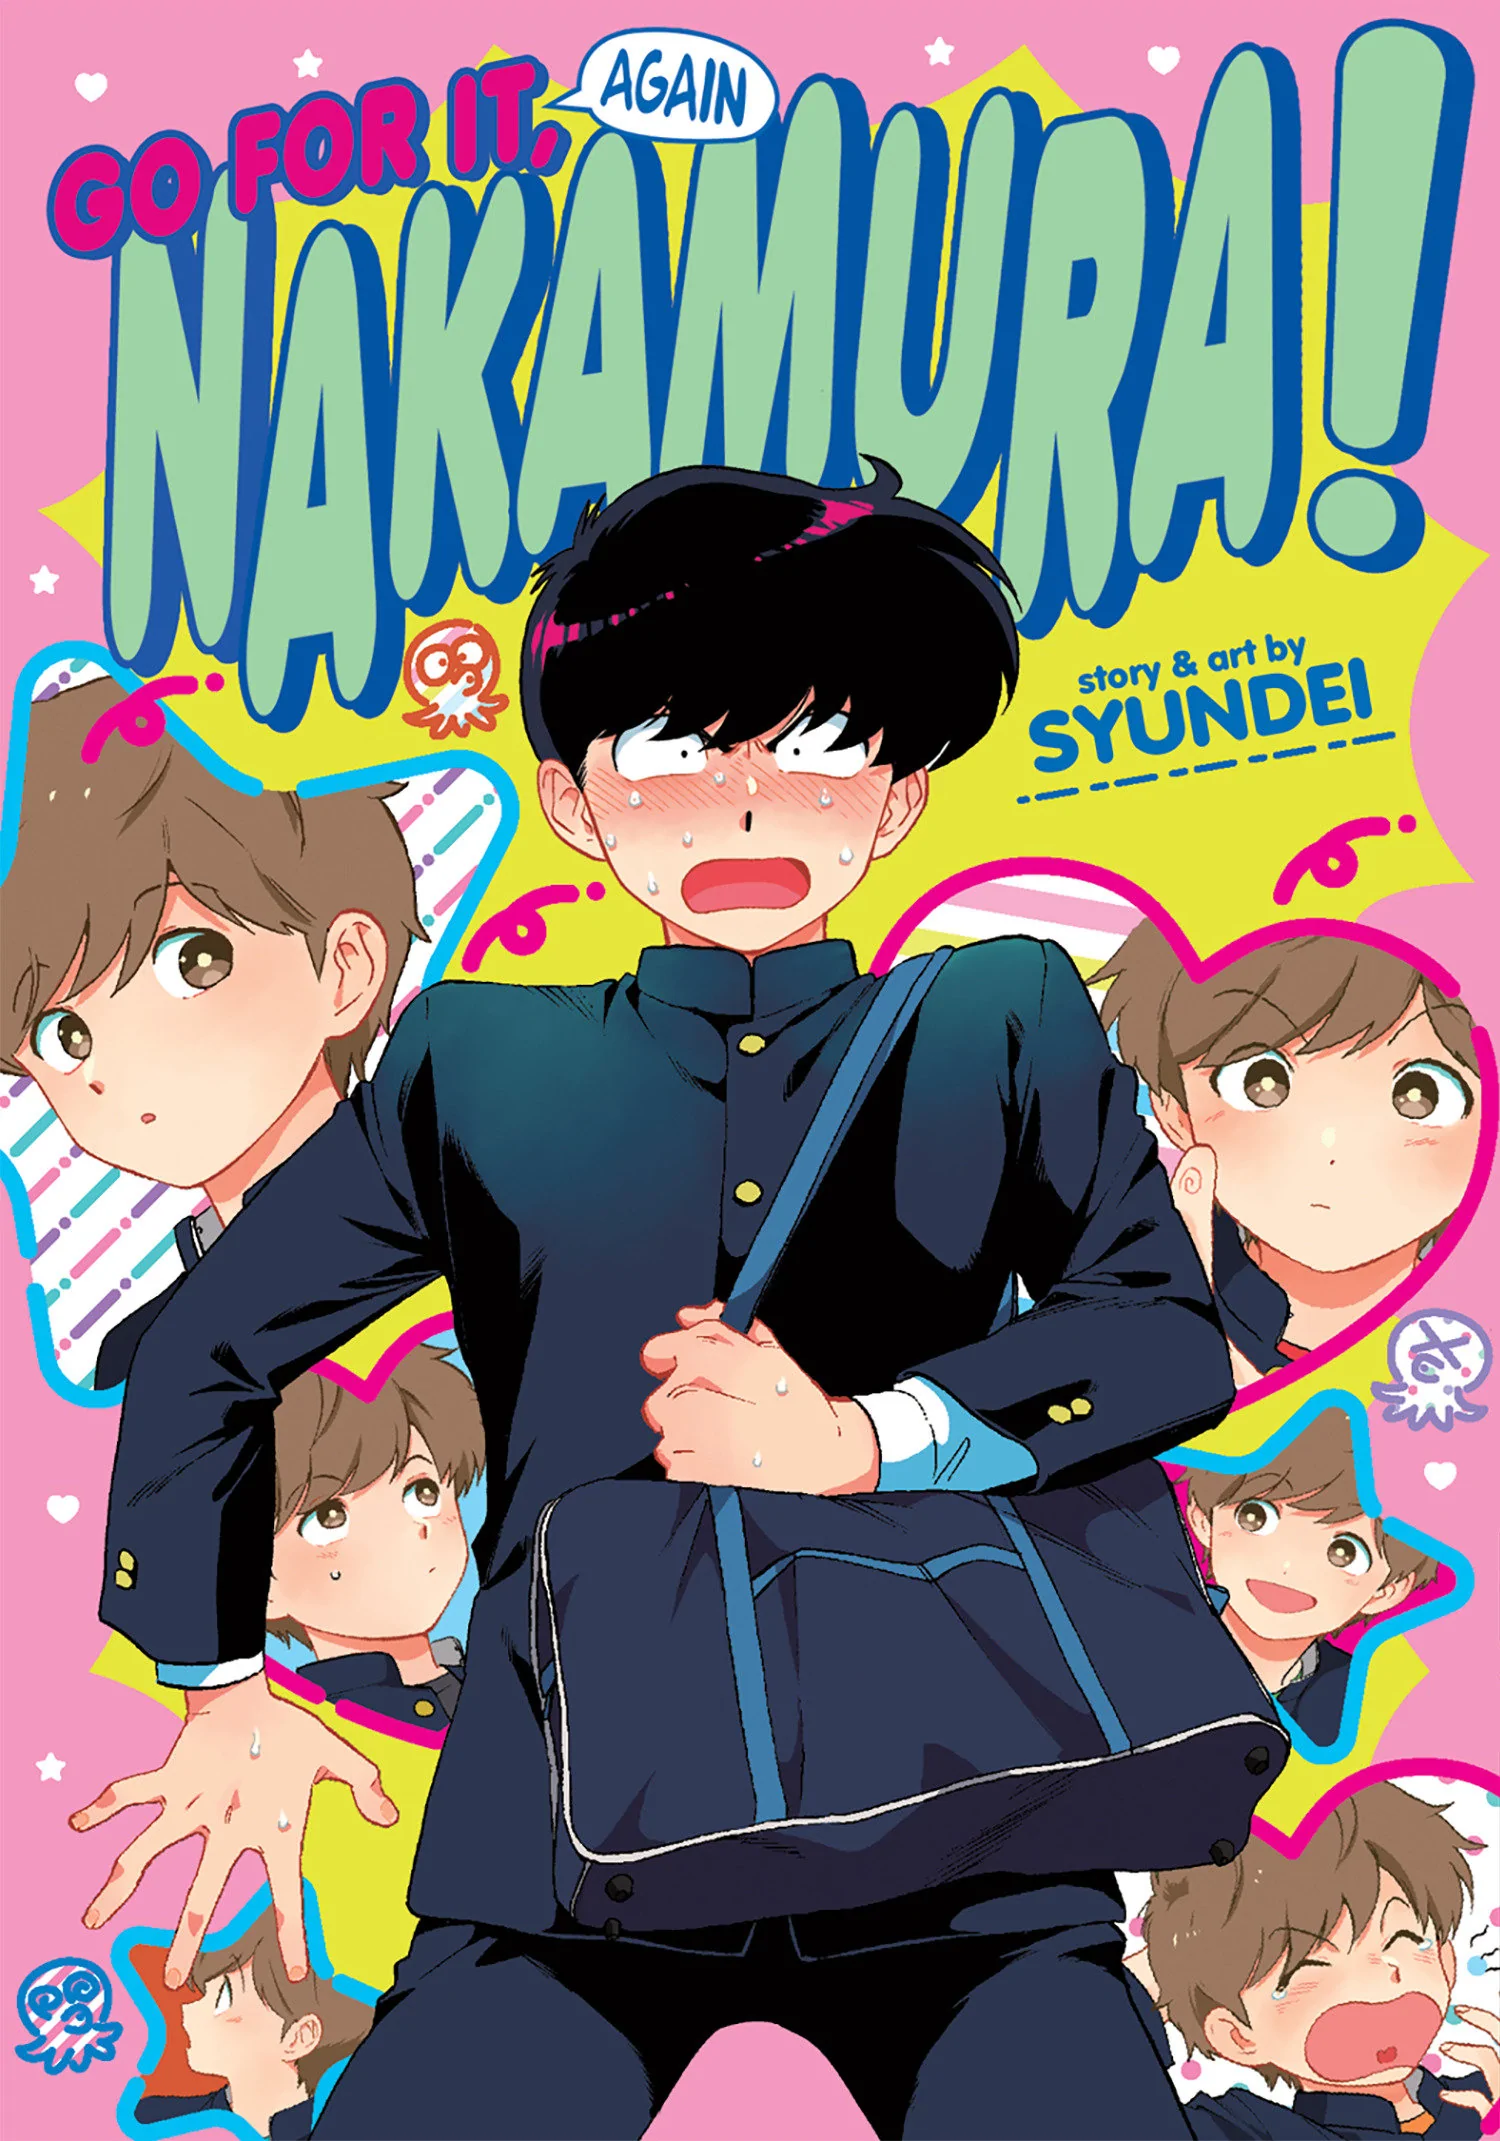 Nakamura Yuki - Character (130215) - AniDB, nakamura anime - thirstymag.com